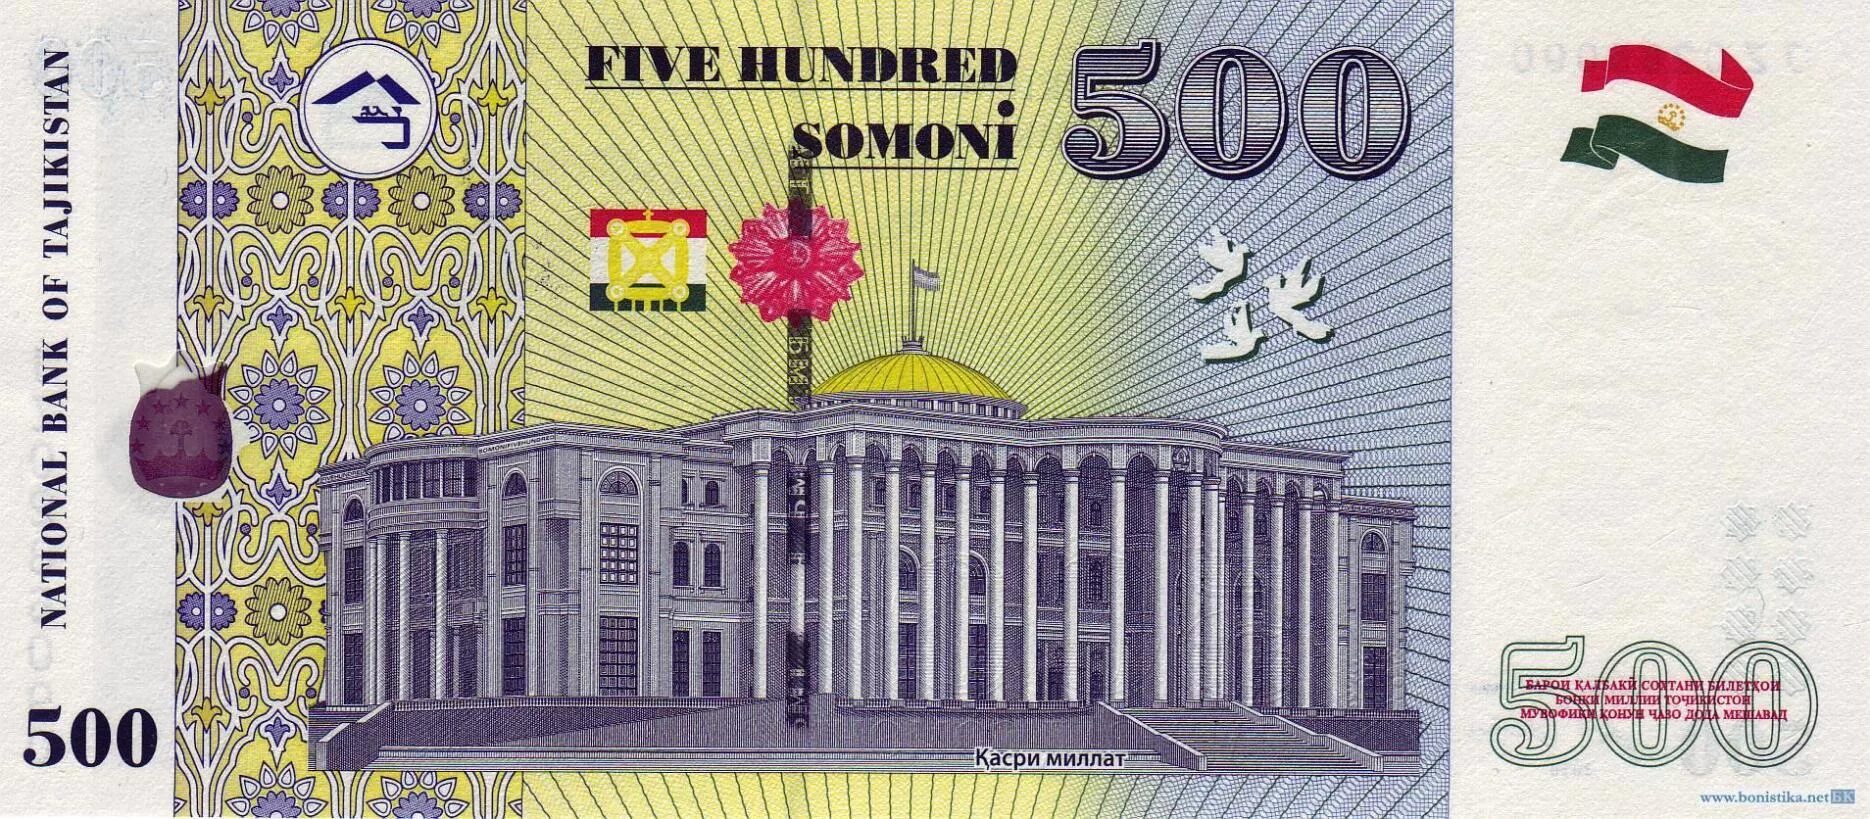 Таджикский купюры 500 Сомони. Купюра Таджикистана 500 Сомони. Купюра 500 Сомони. Денежные знаки Таджикистана.